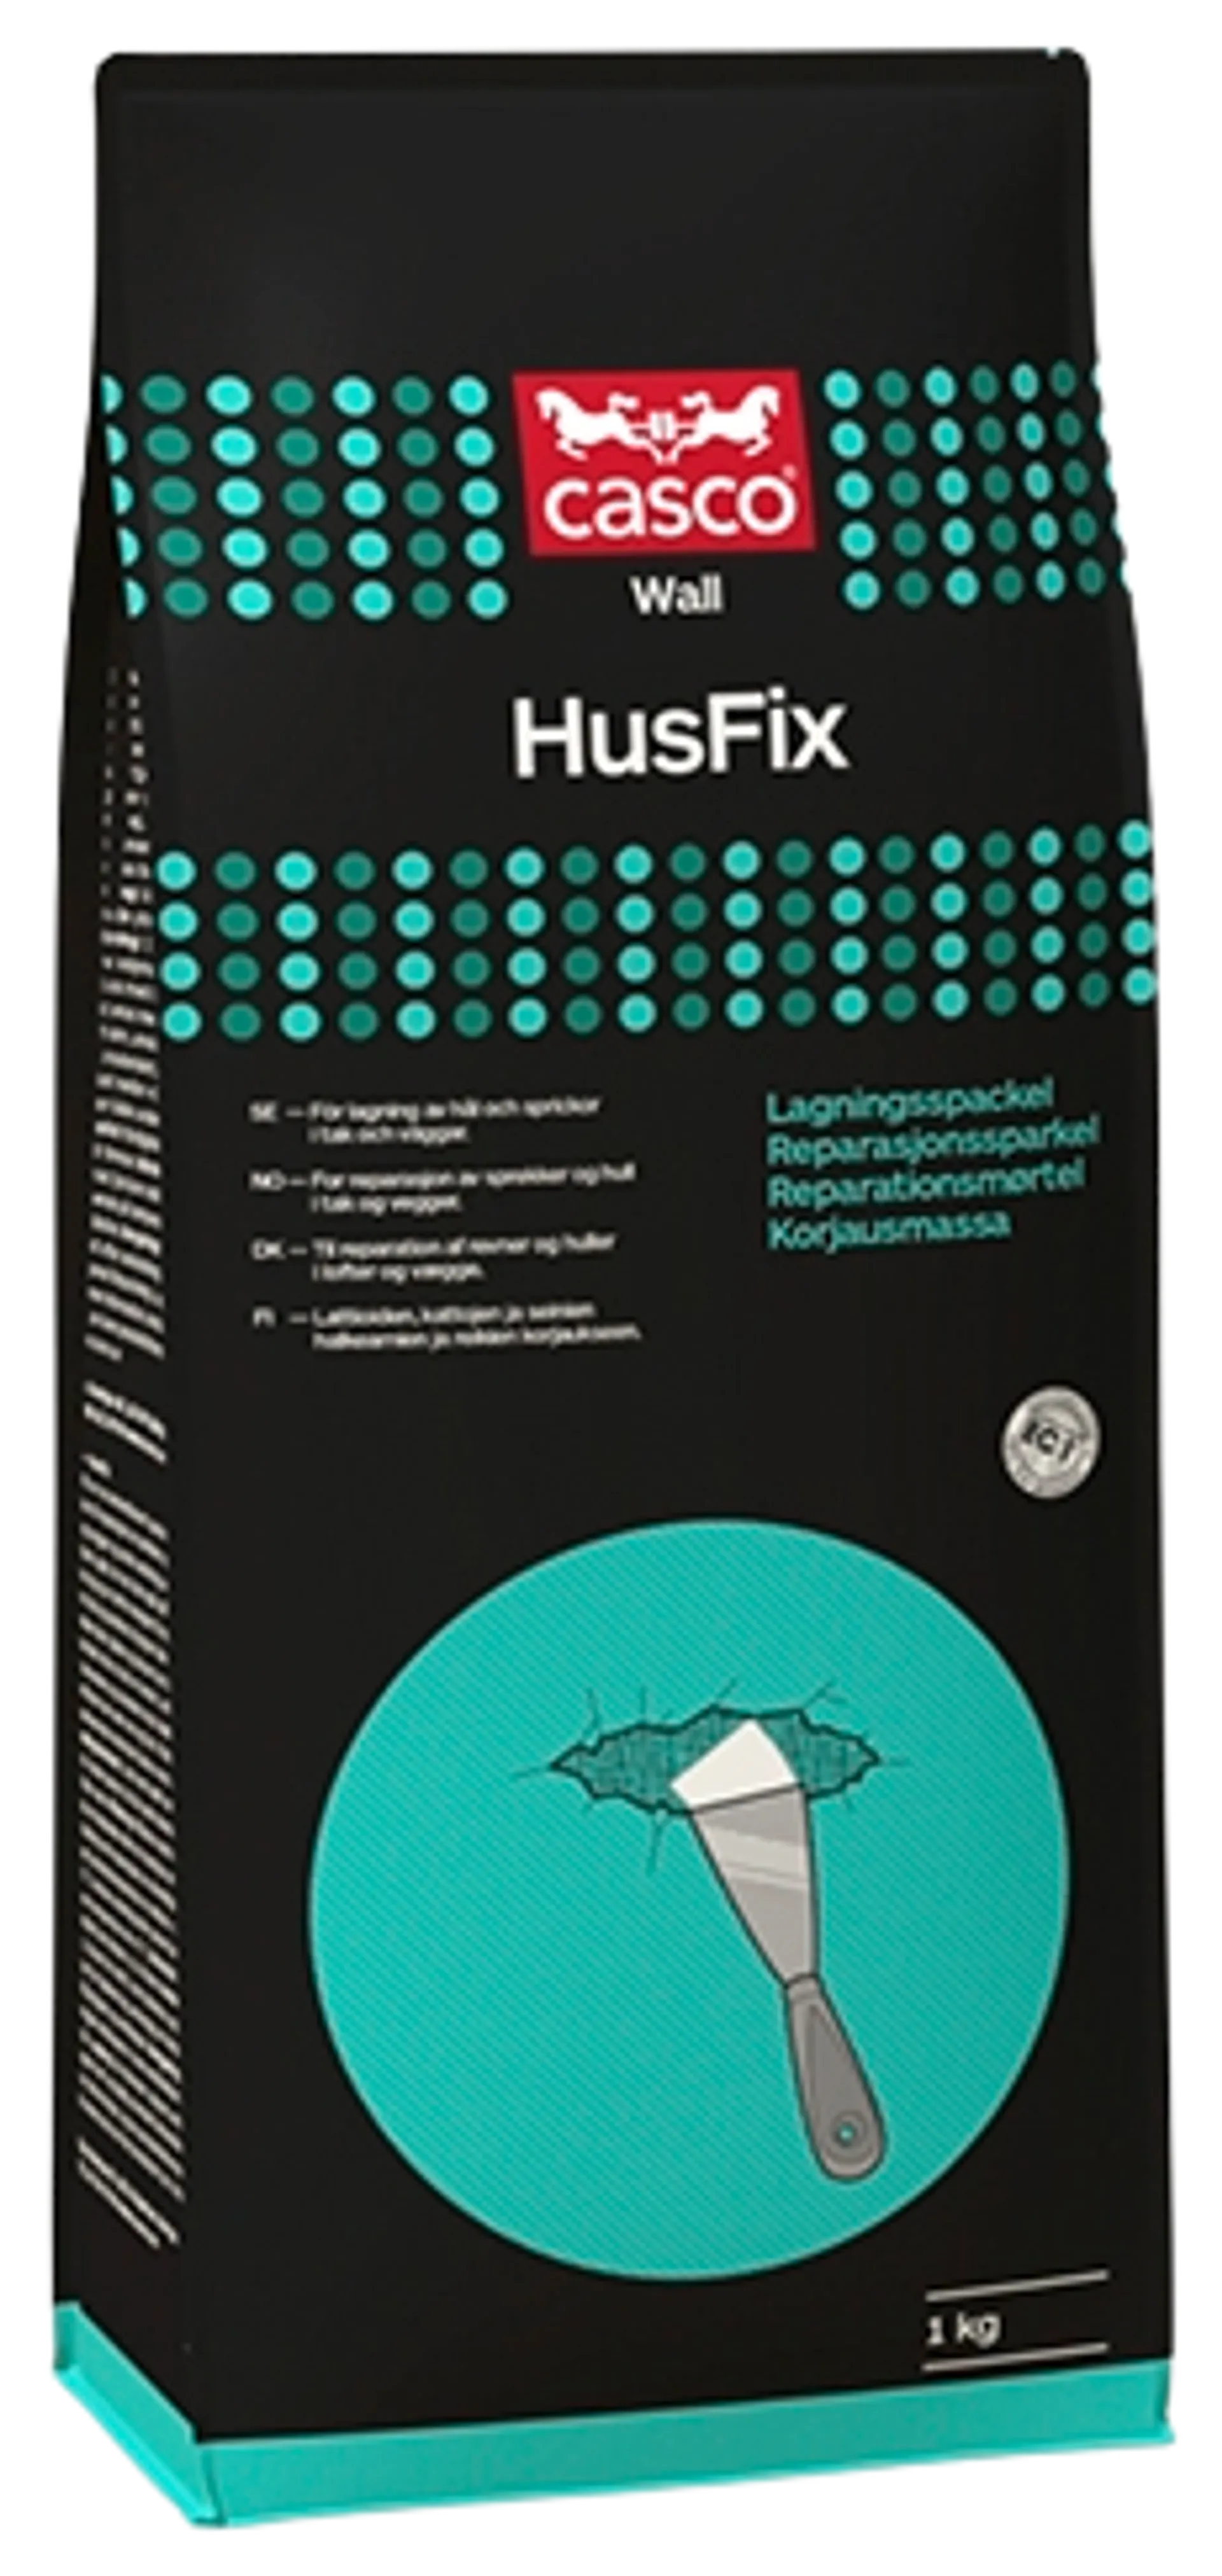 Casco kiinnitys- ja korjausmassa HusFix 1 kg